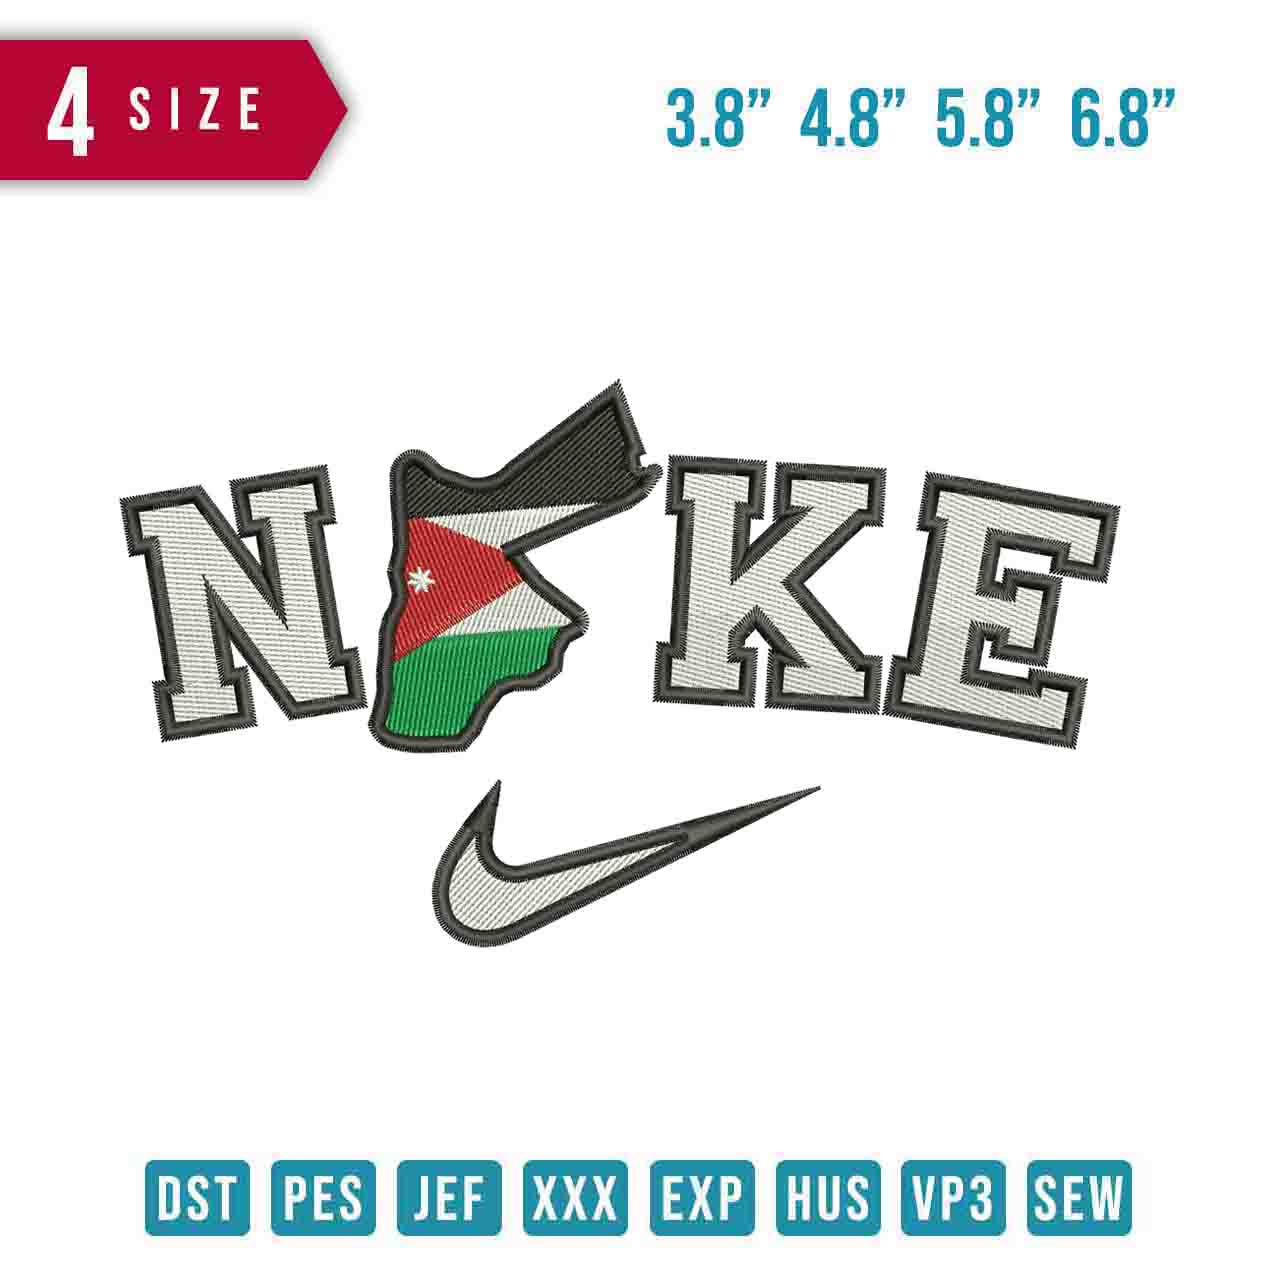 Nike Jordania Karte